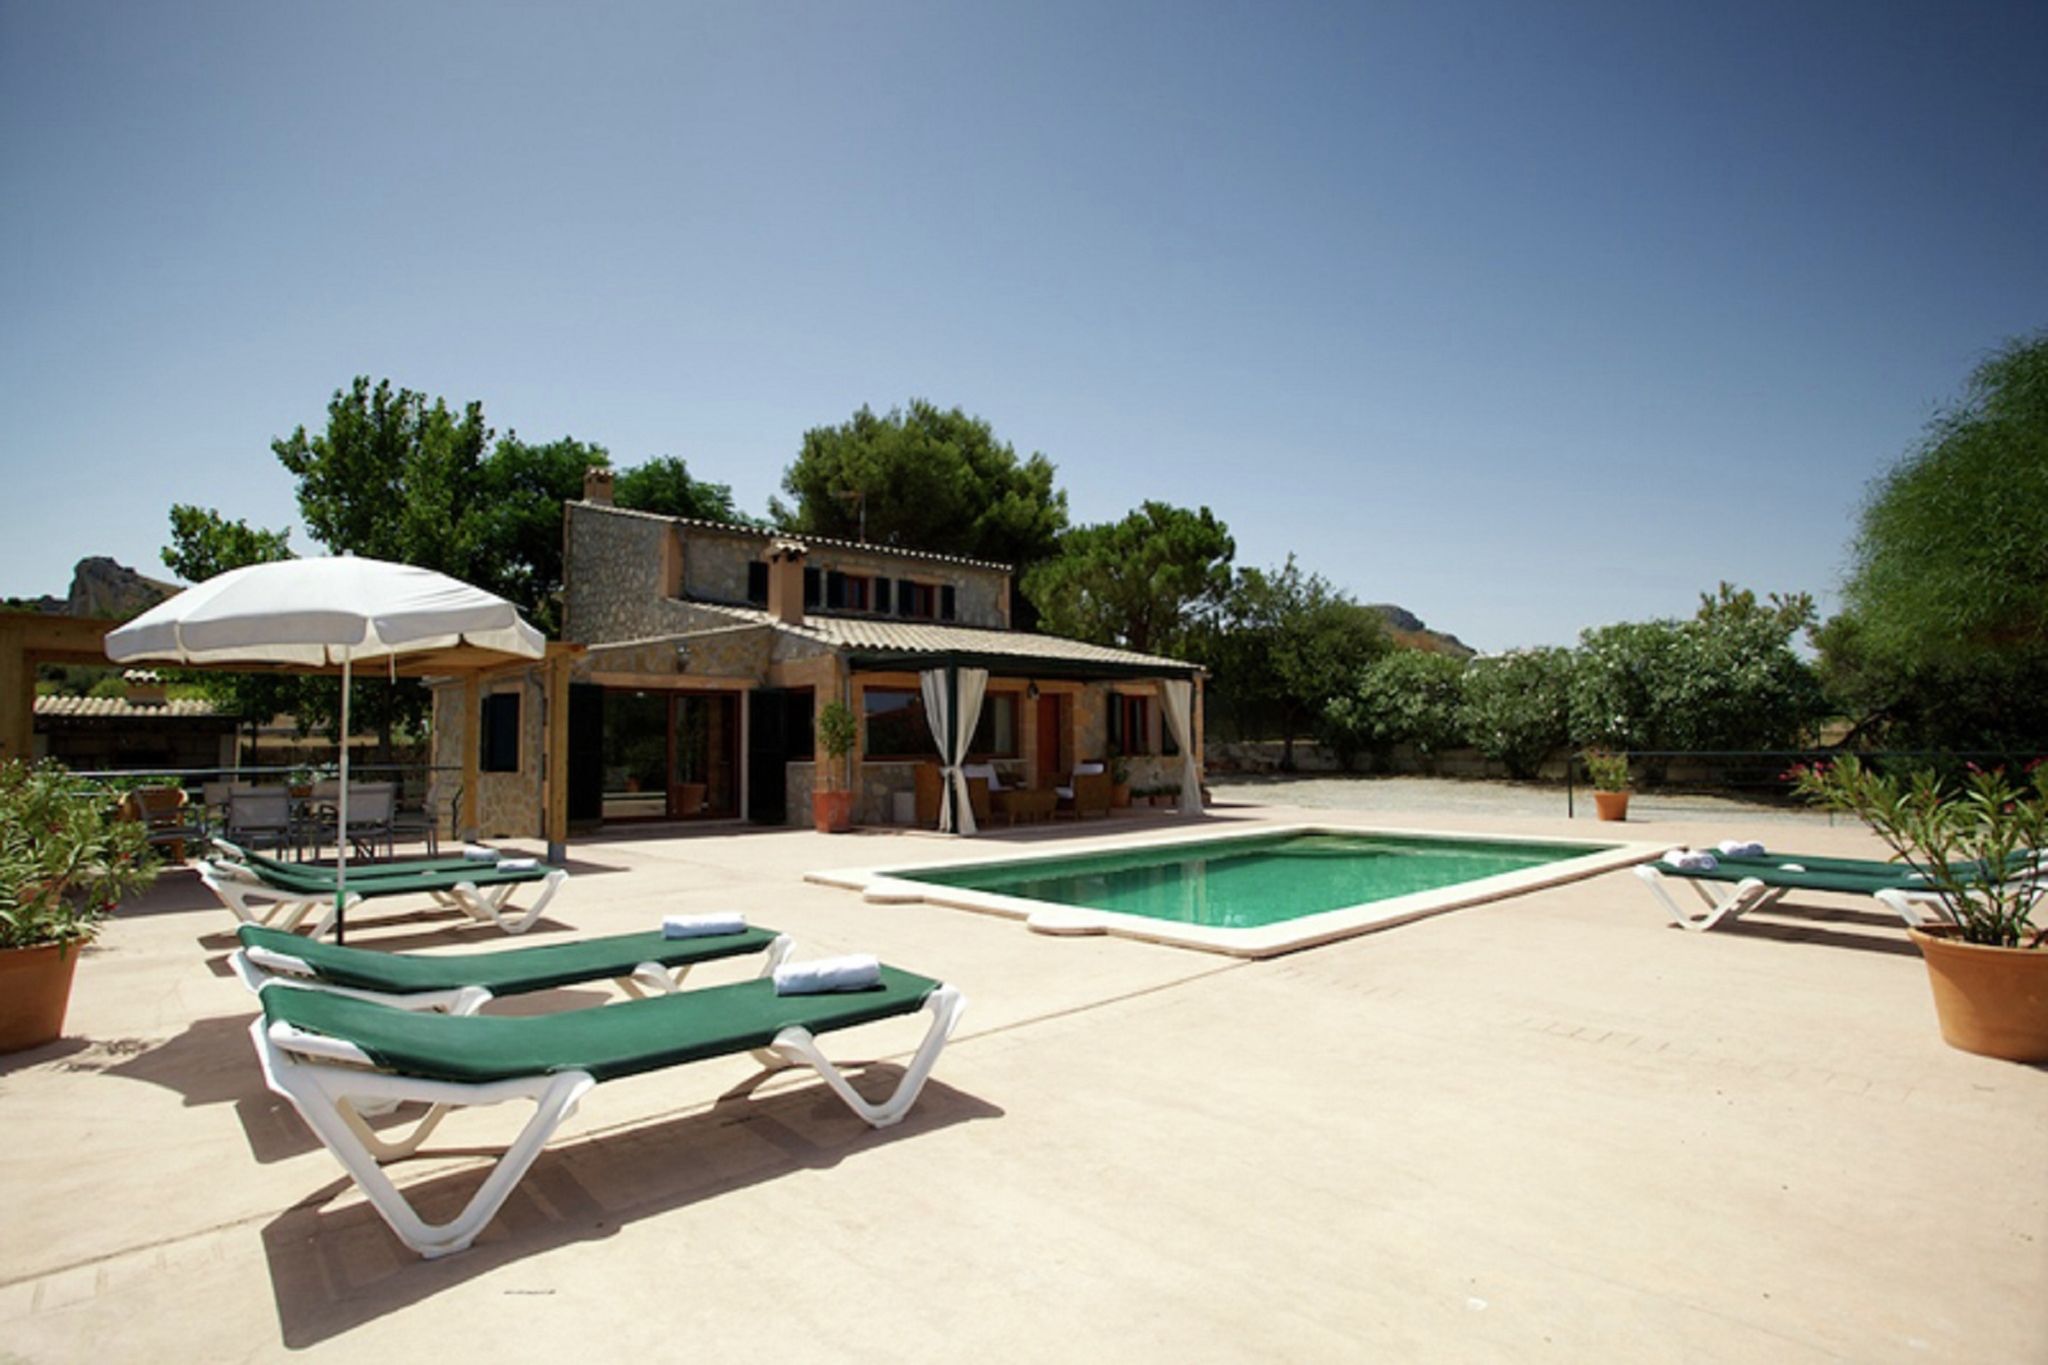 Comfortabel vakantiehuis met privé-zwembad nabij het strand op Mallorca